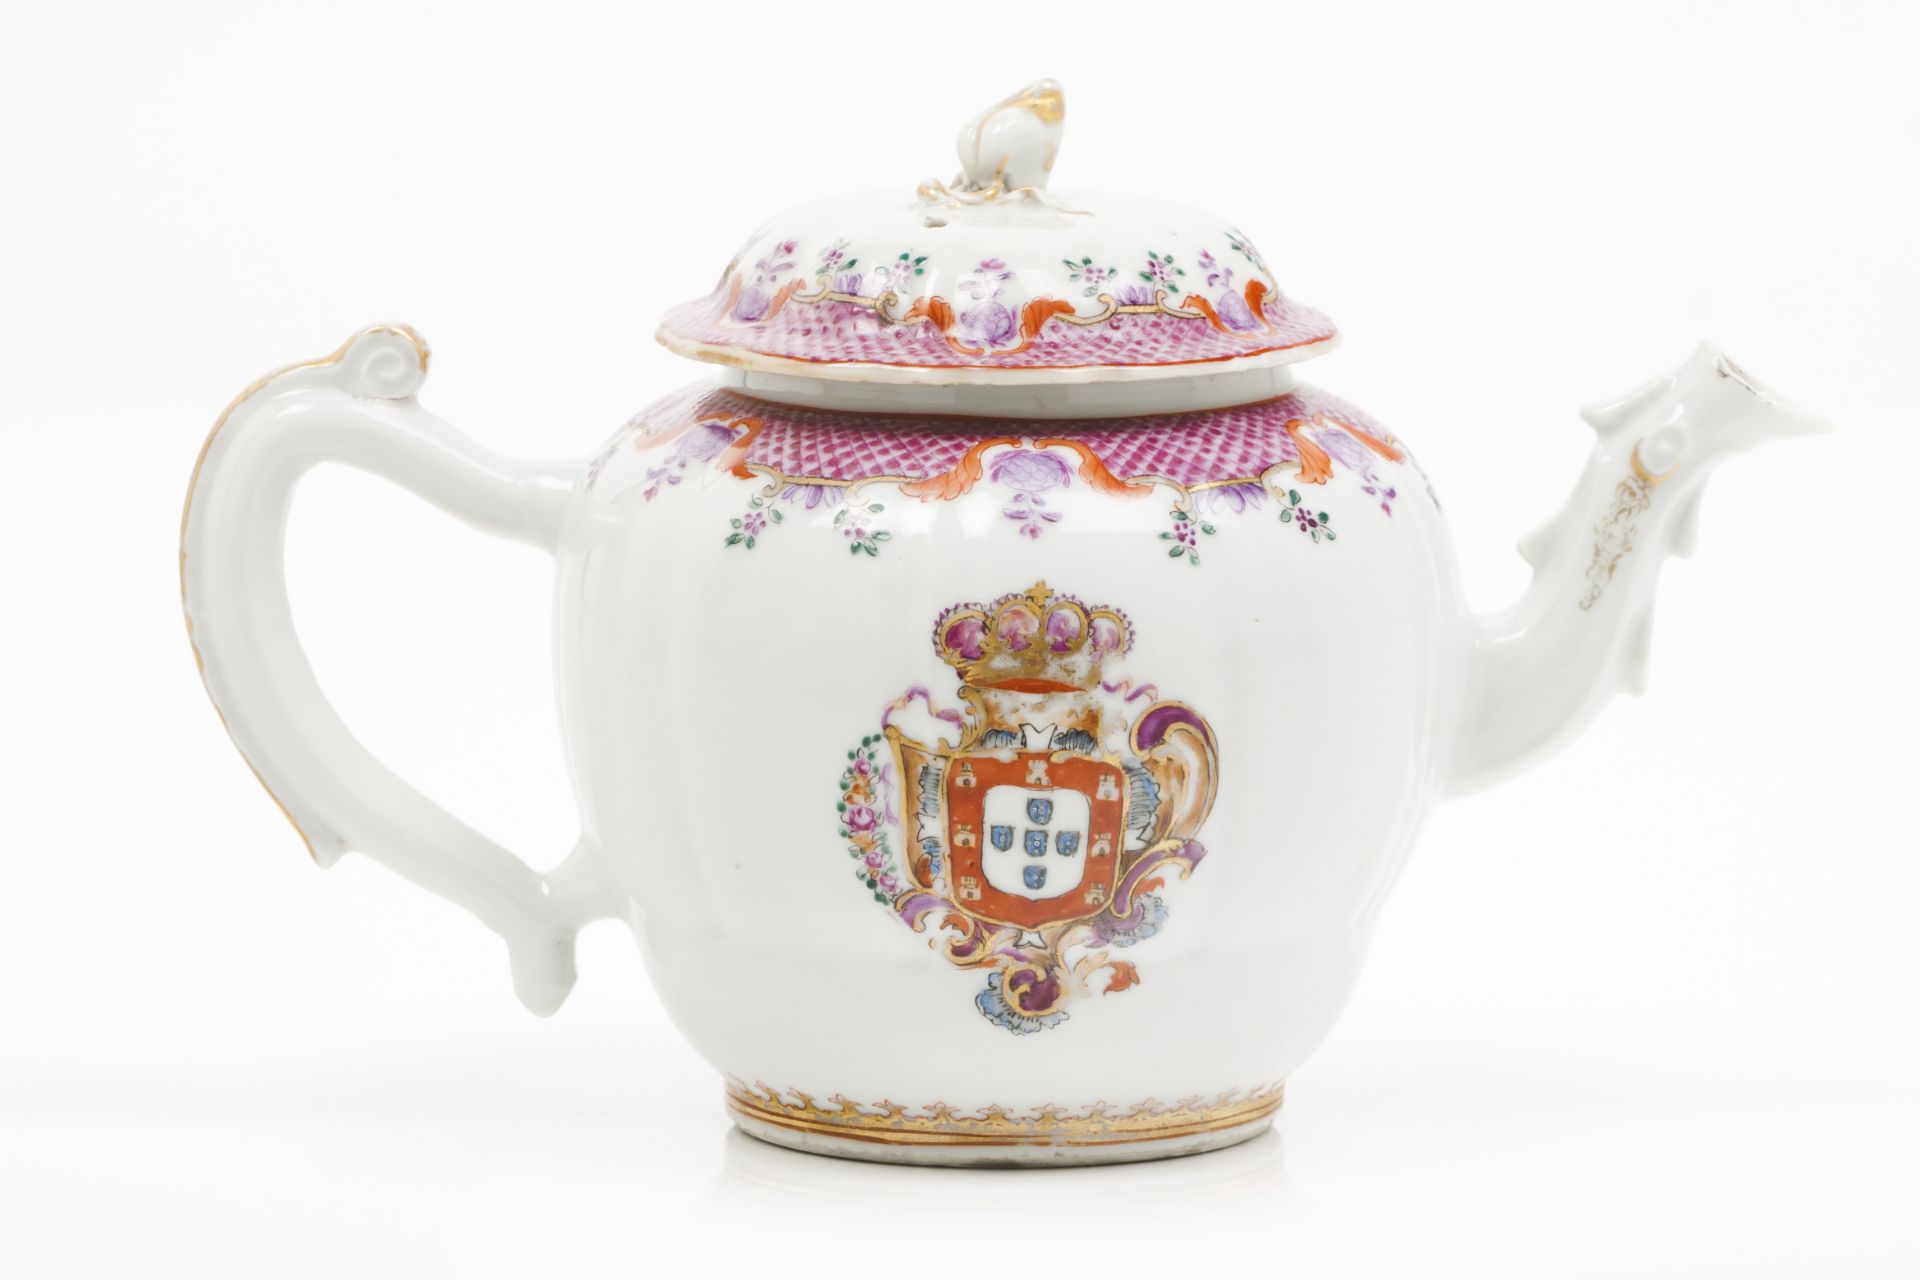 A rare armorial teapot